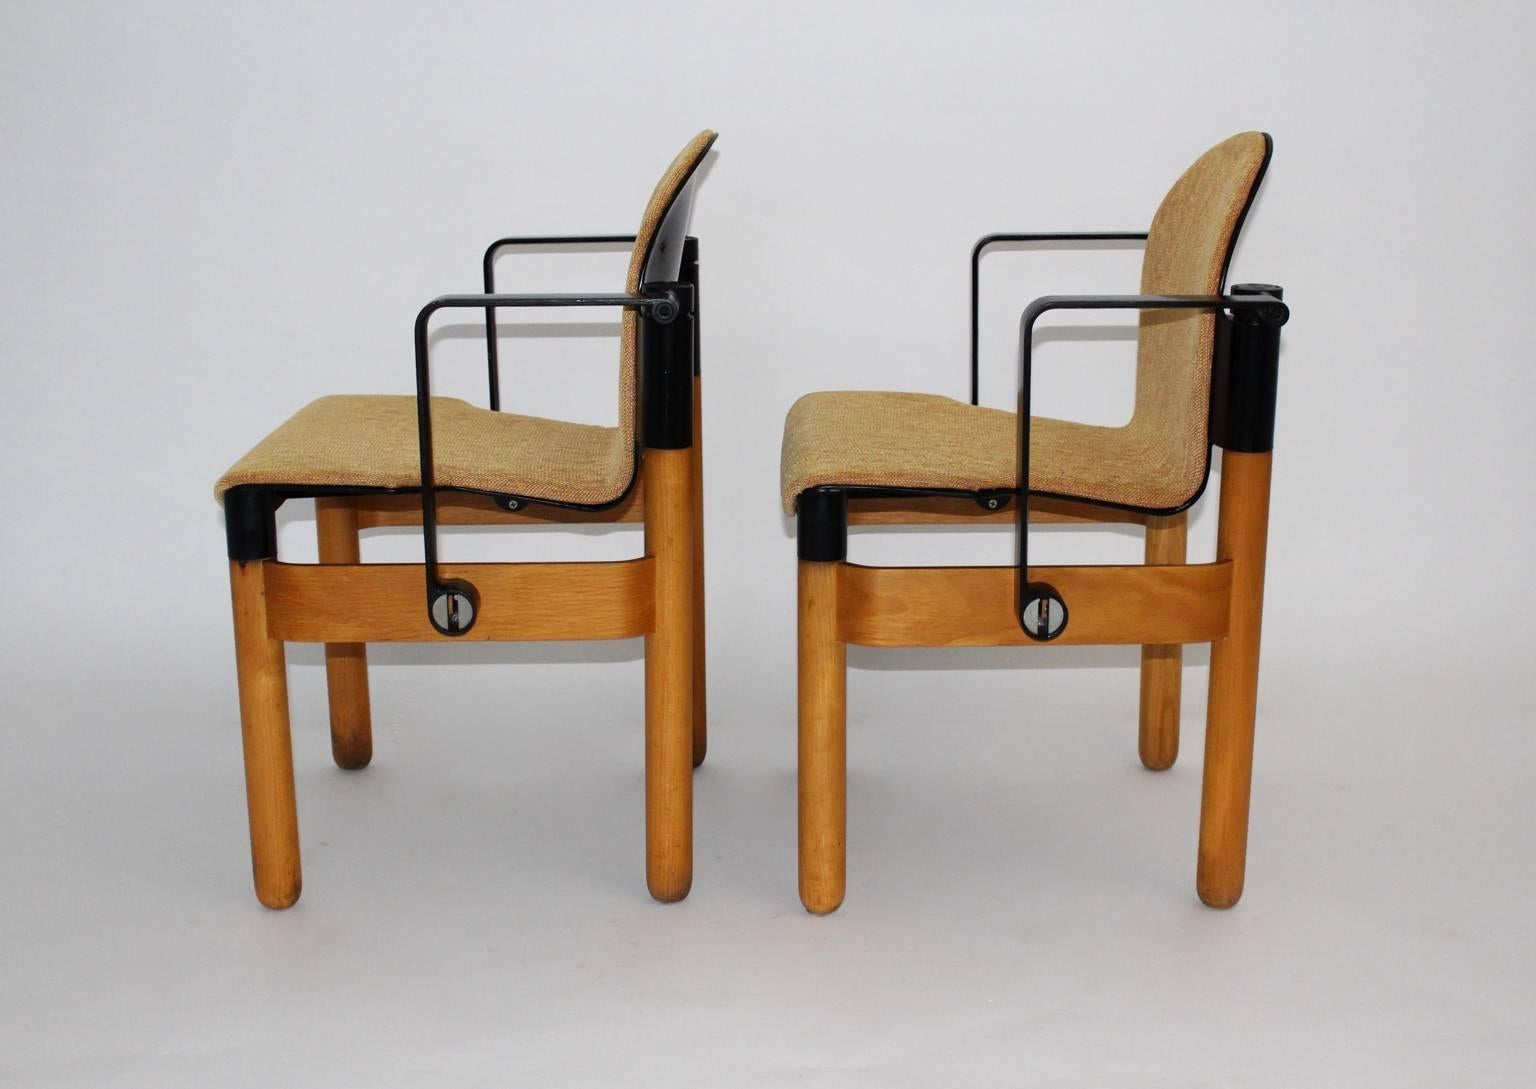 Sesselpaar, entworfen von Gerd Lange, 1973, Deutschland, hergestellt von Thonet.

Die Beine sind aus massivem Eschenholz, die Zarge ist aus Eschen-Bugholz.
Die Armlehnen sind aus schwarz lackiertem Aluminium gefertigt. Die Sitzfläche besteht aus